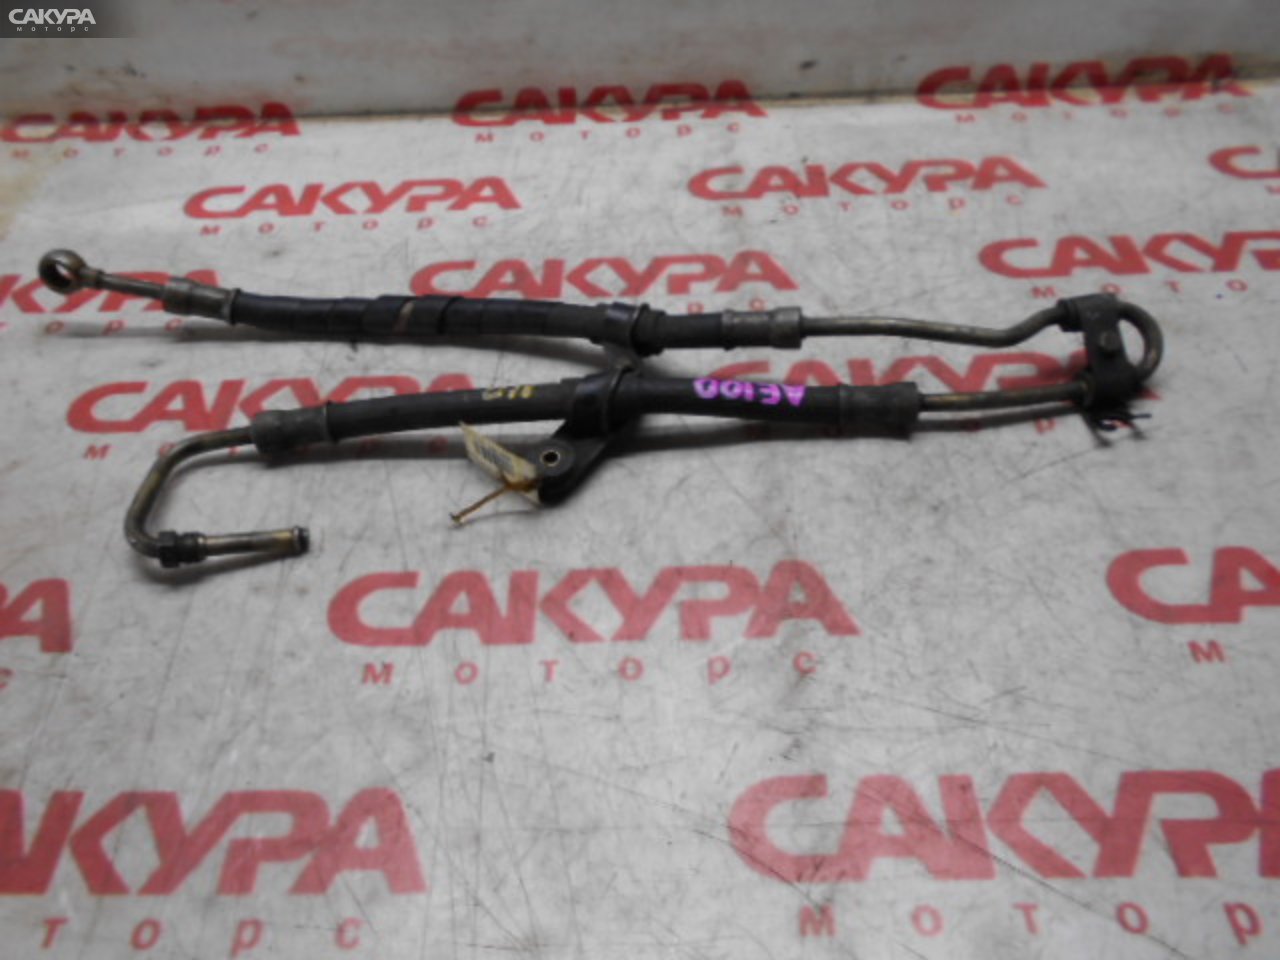 Шланг высокого давления Toyota AE110 5A-FE: купить в Сакура Кемерово.